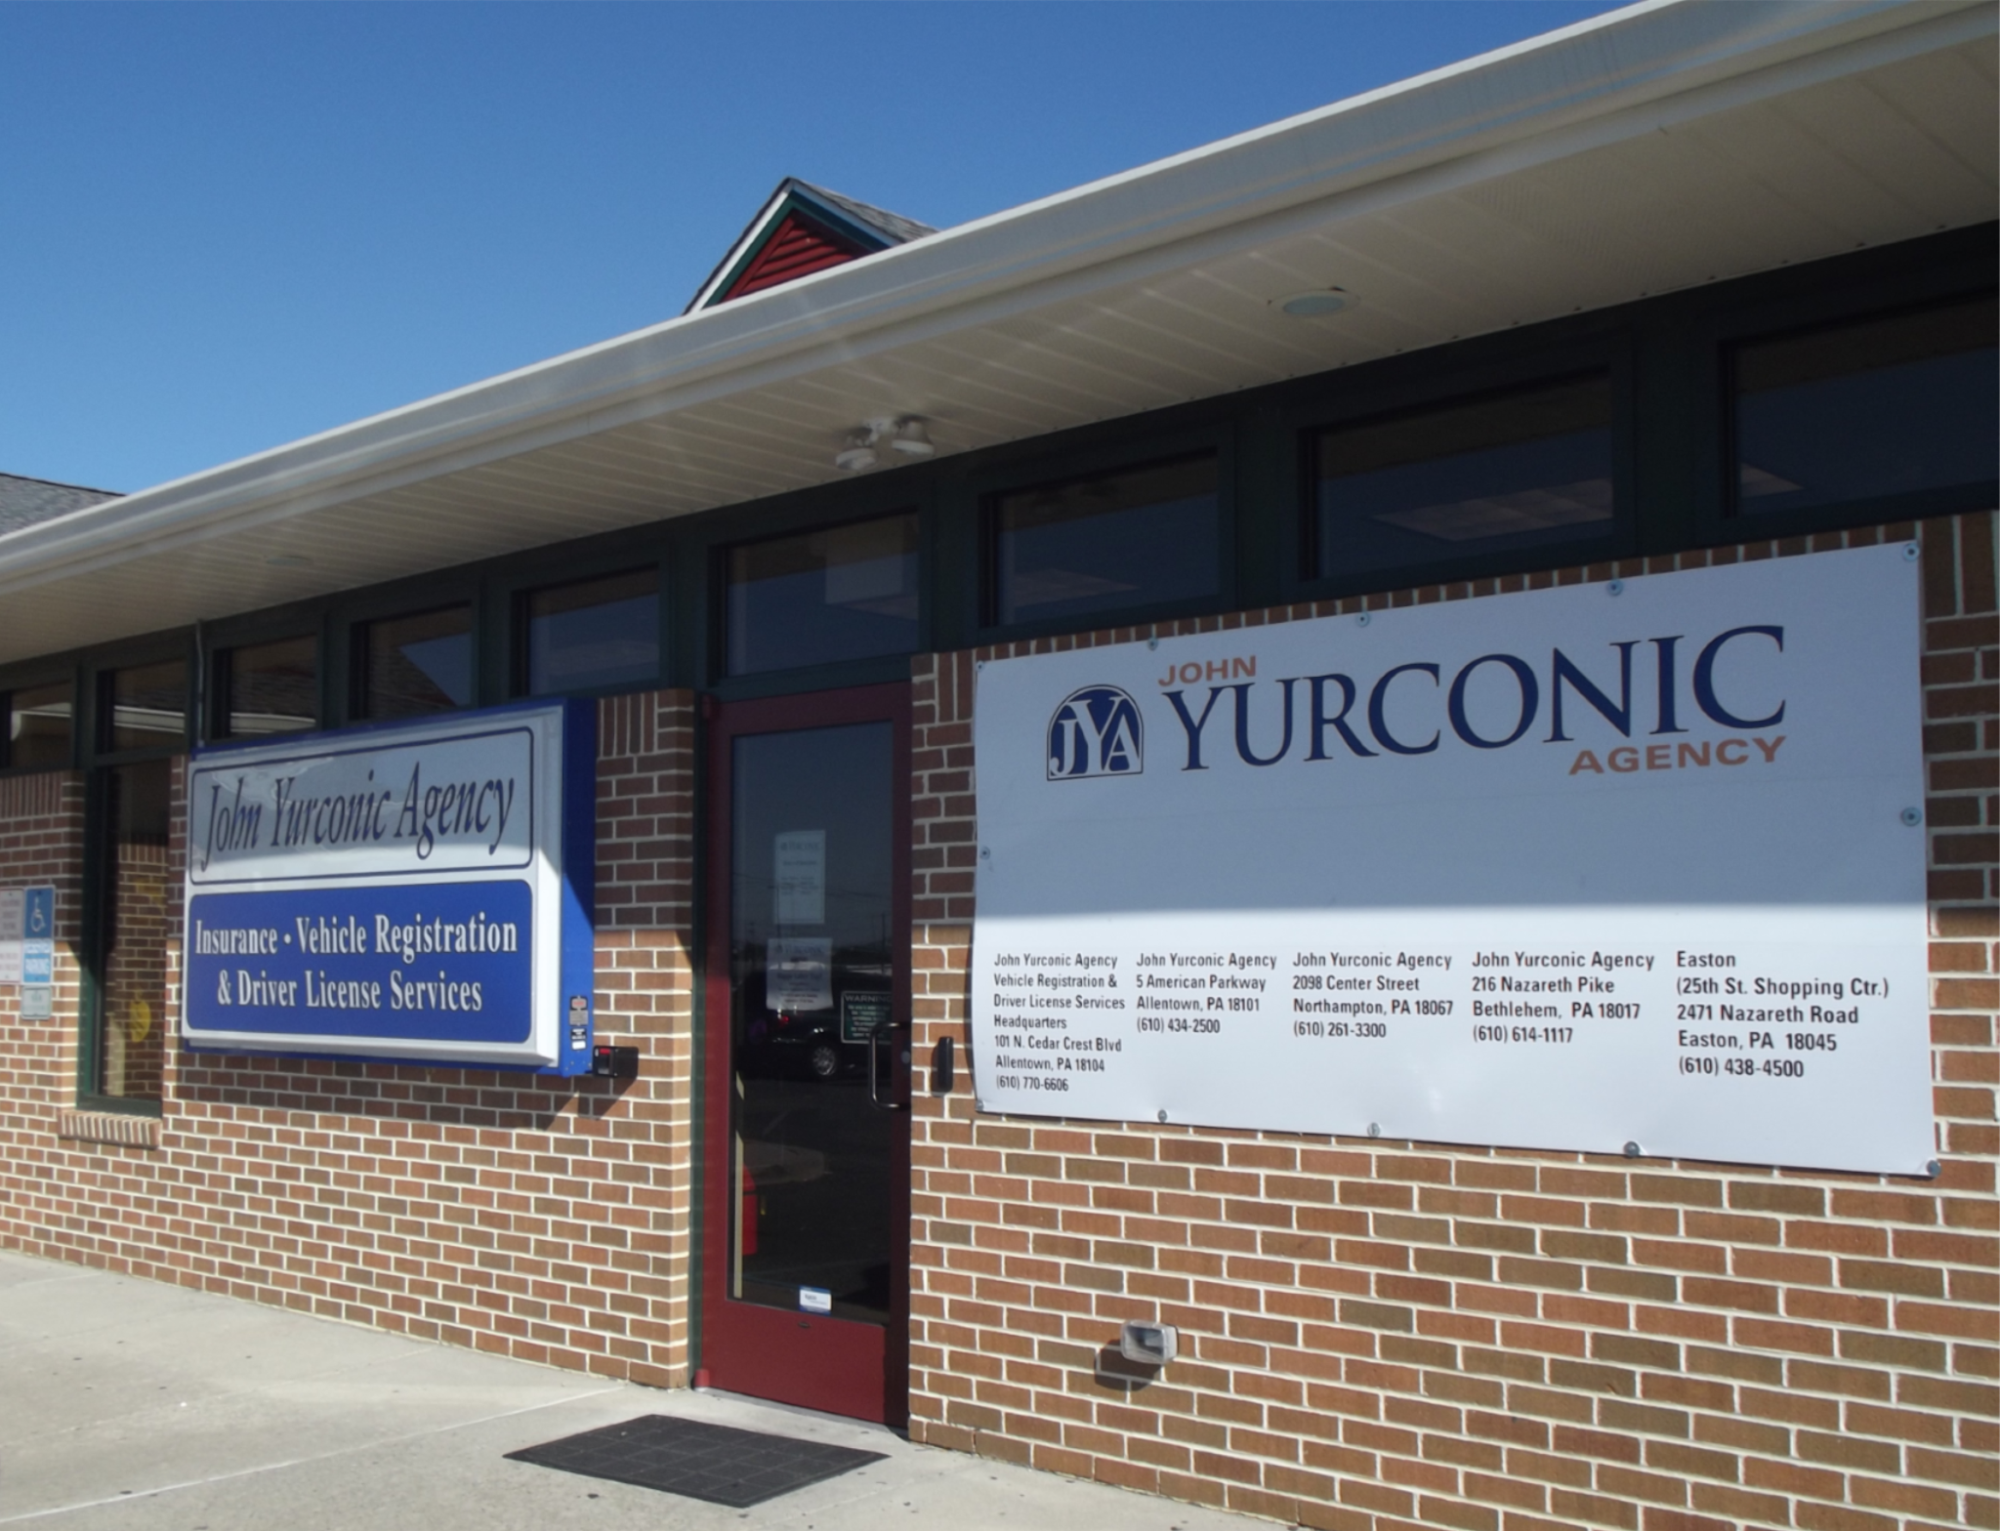 The Yurconic Agency